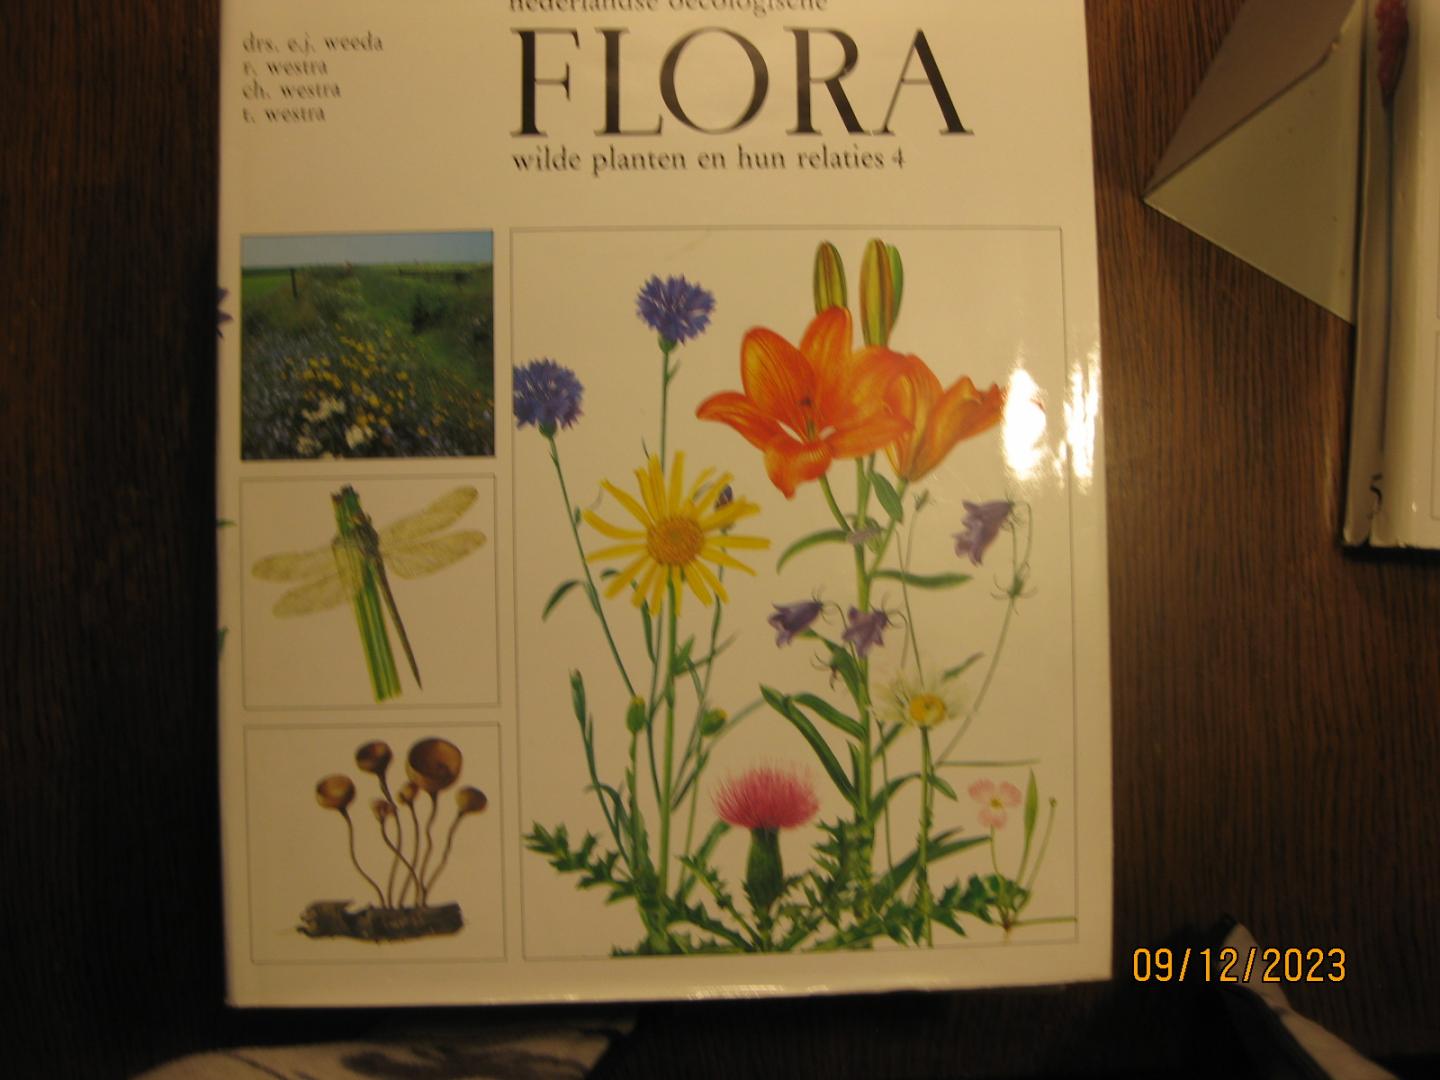 drs E J Weeda --R Westra--CH Westra --T Westra - Nederlandse oecologische flora / 5 wilde planten / druk 1